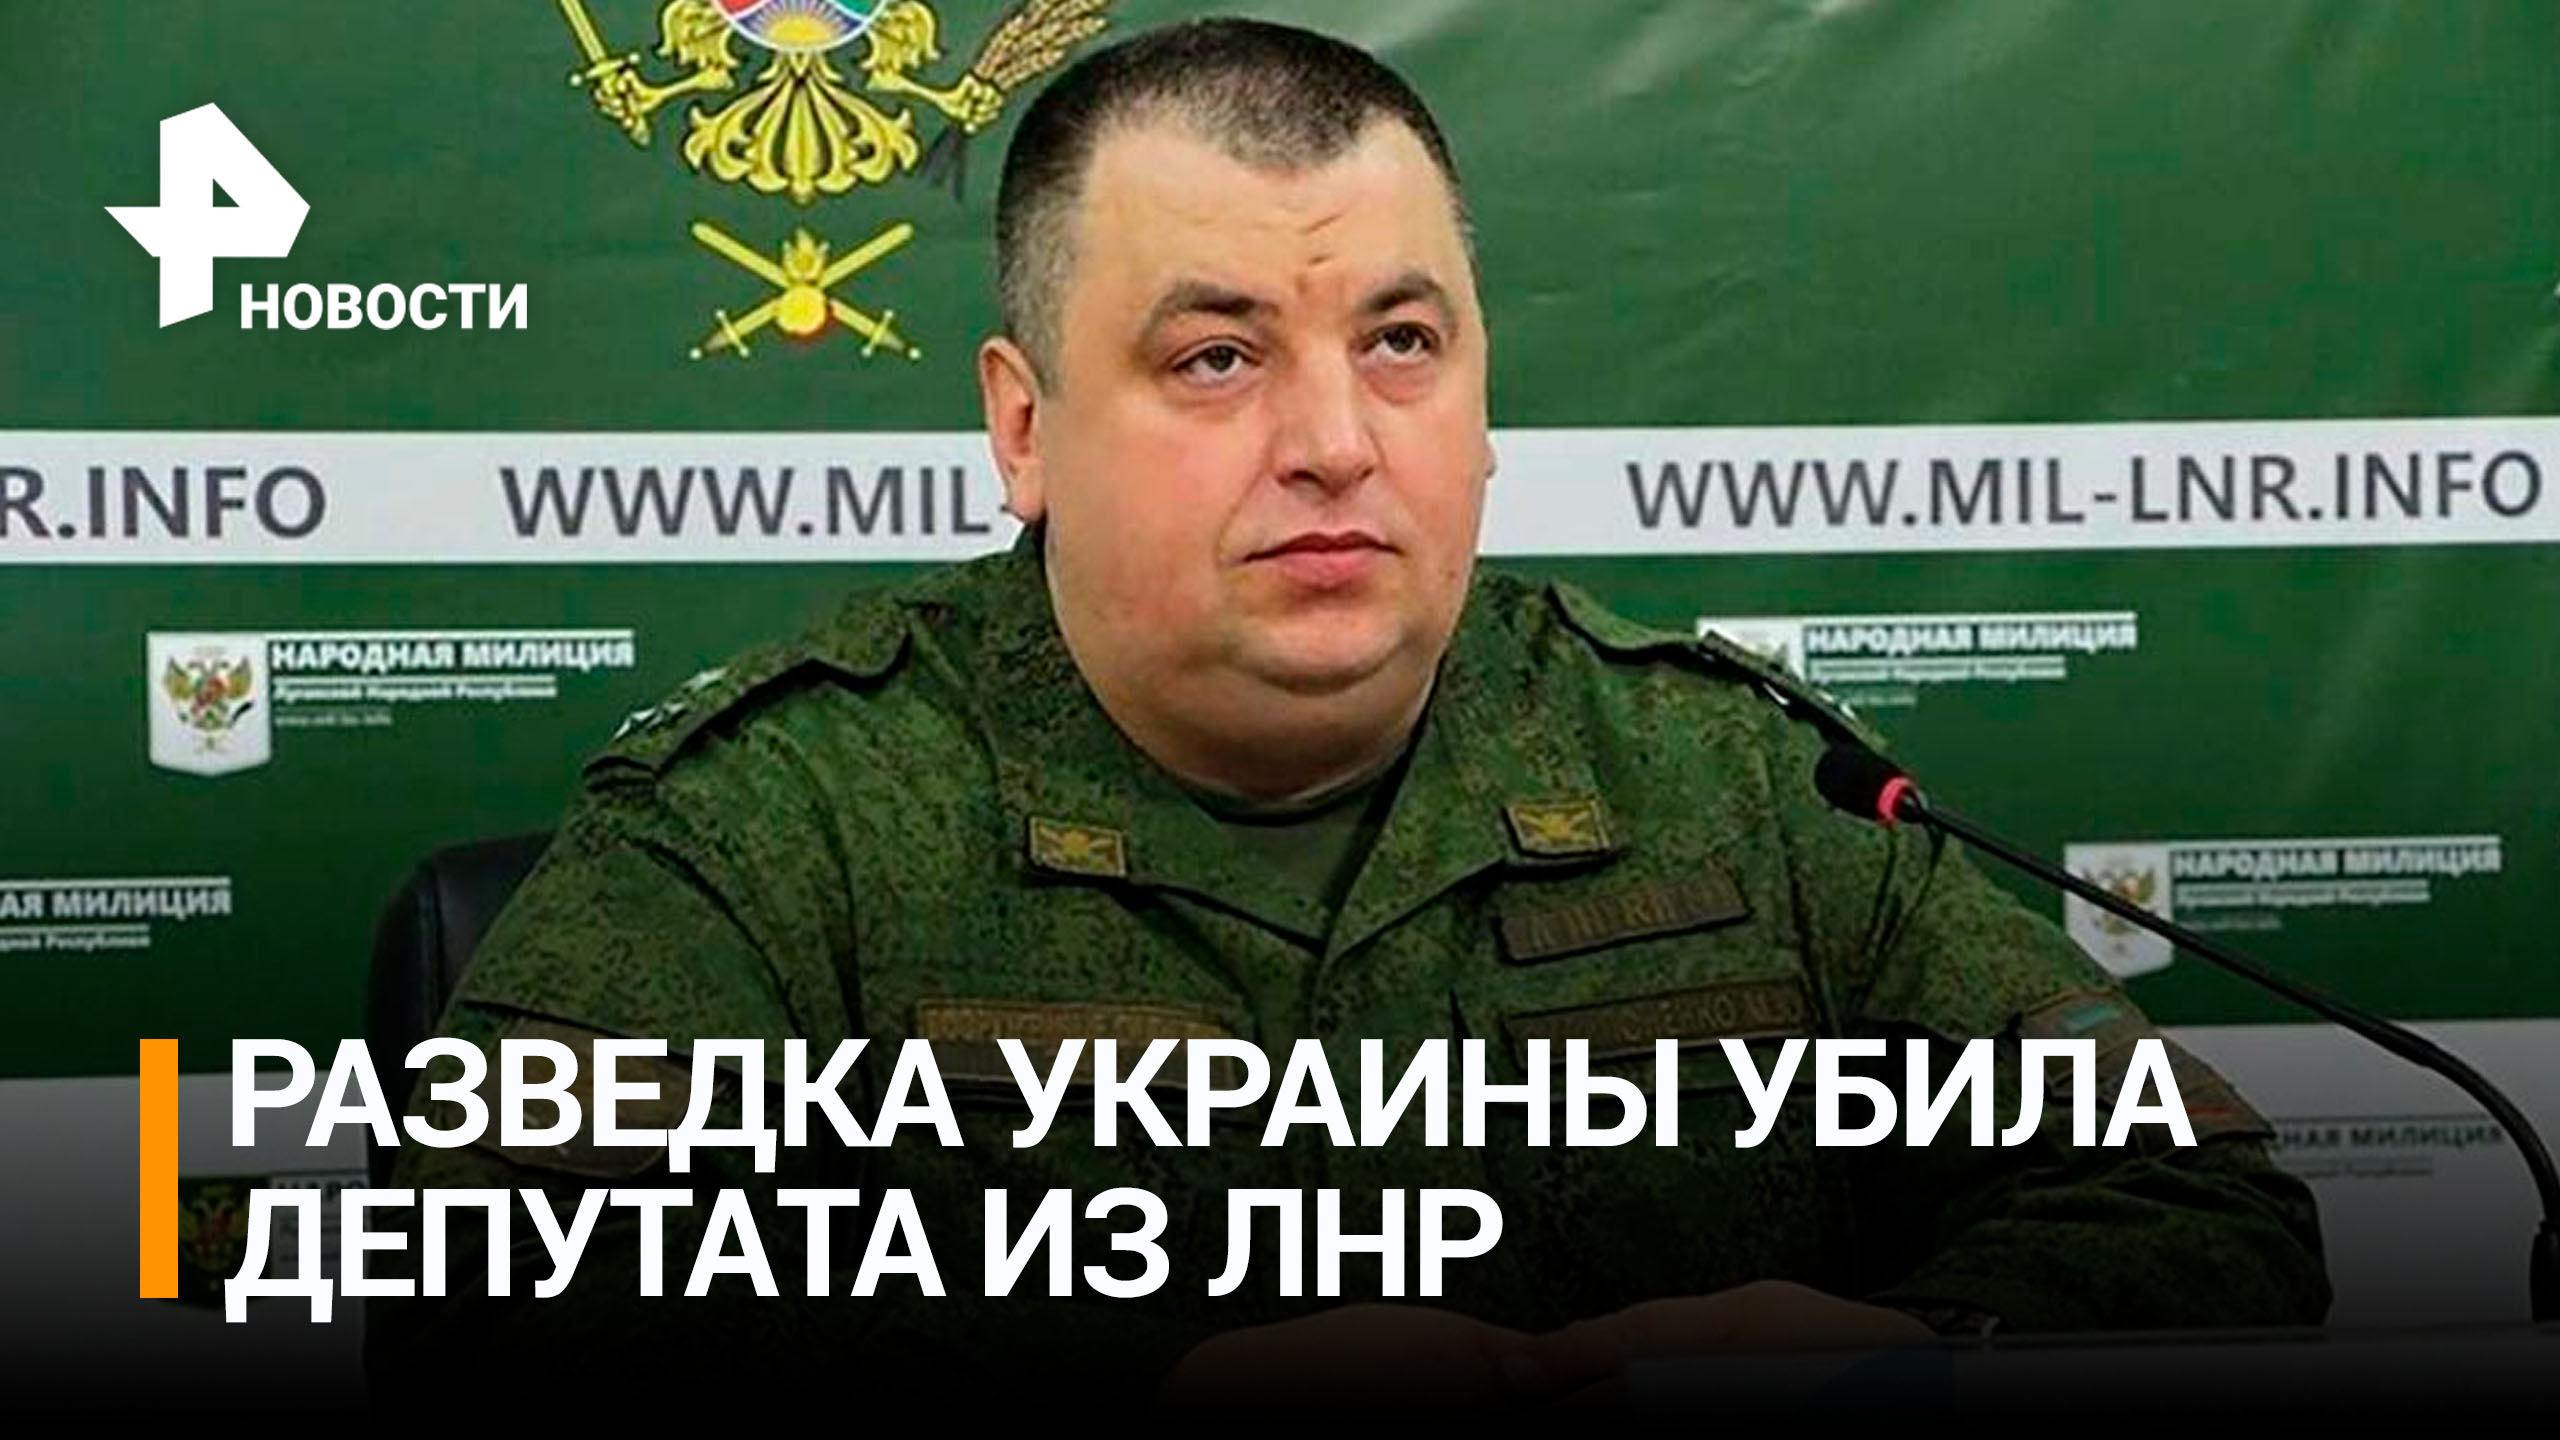 Кровавый террор: разведка Украины убила депутата из ЛНР и призналась в этом